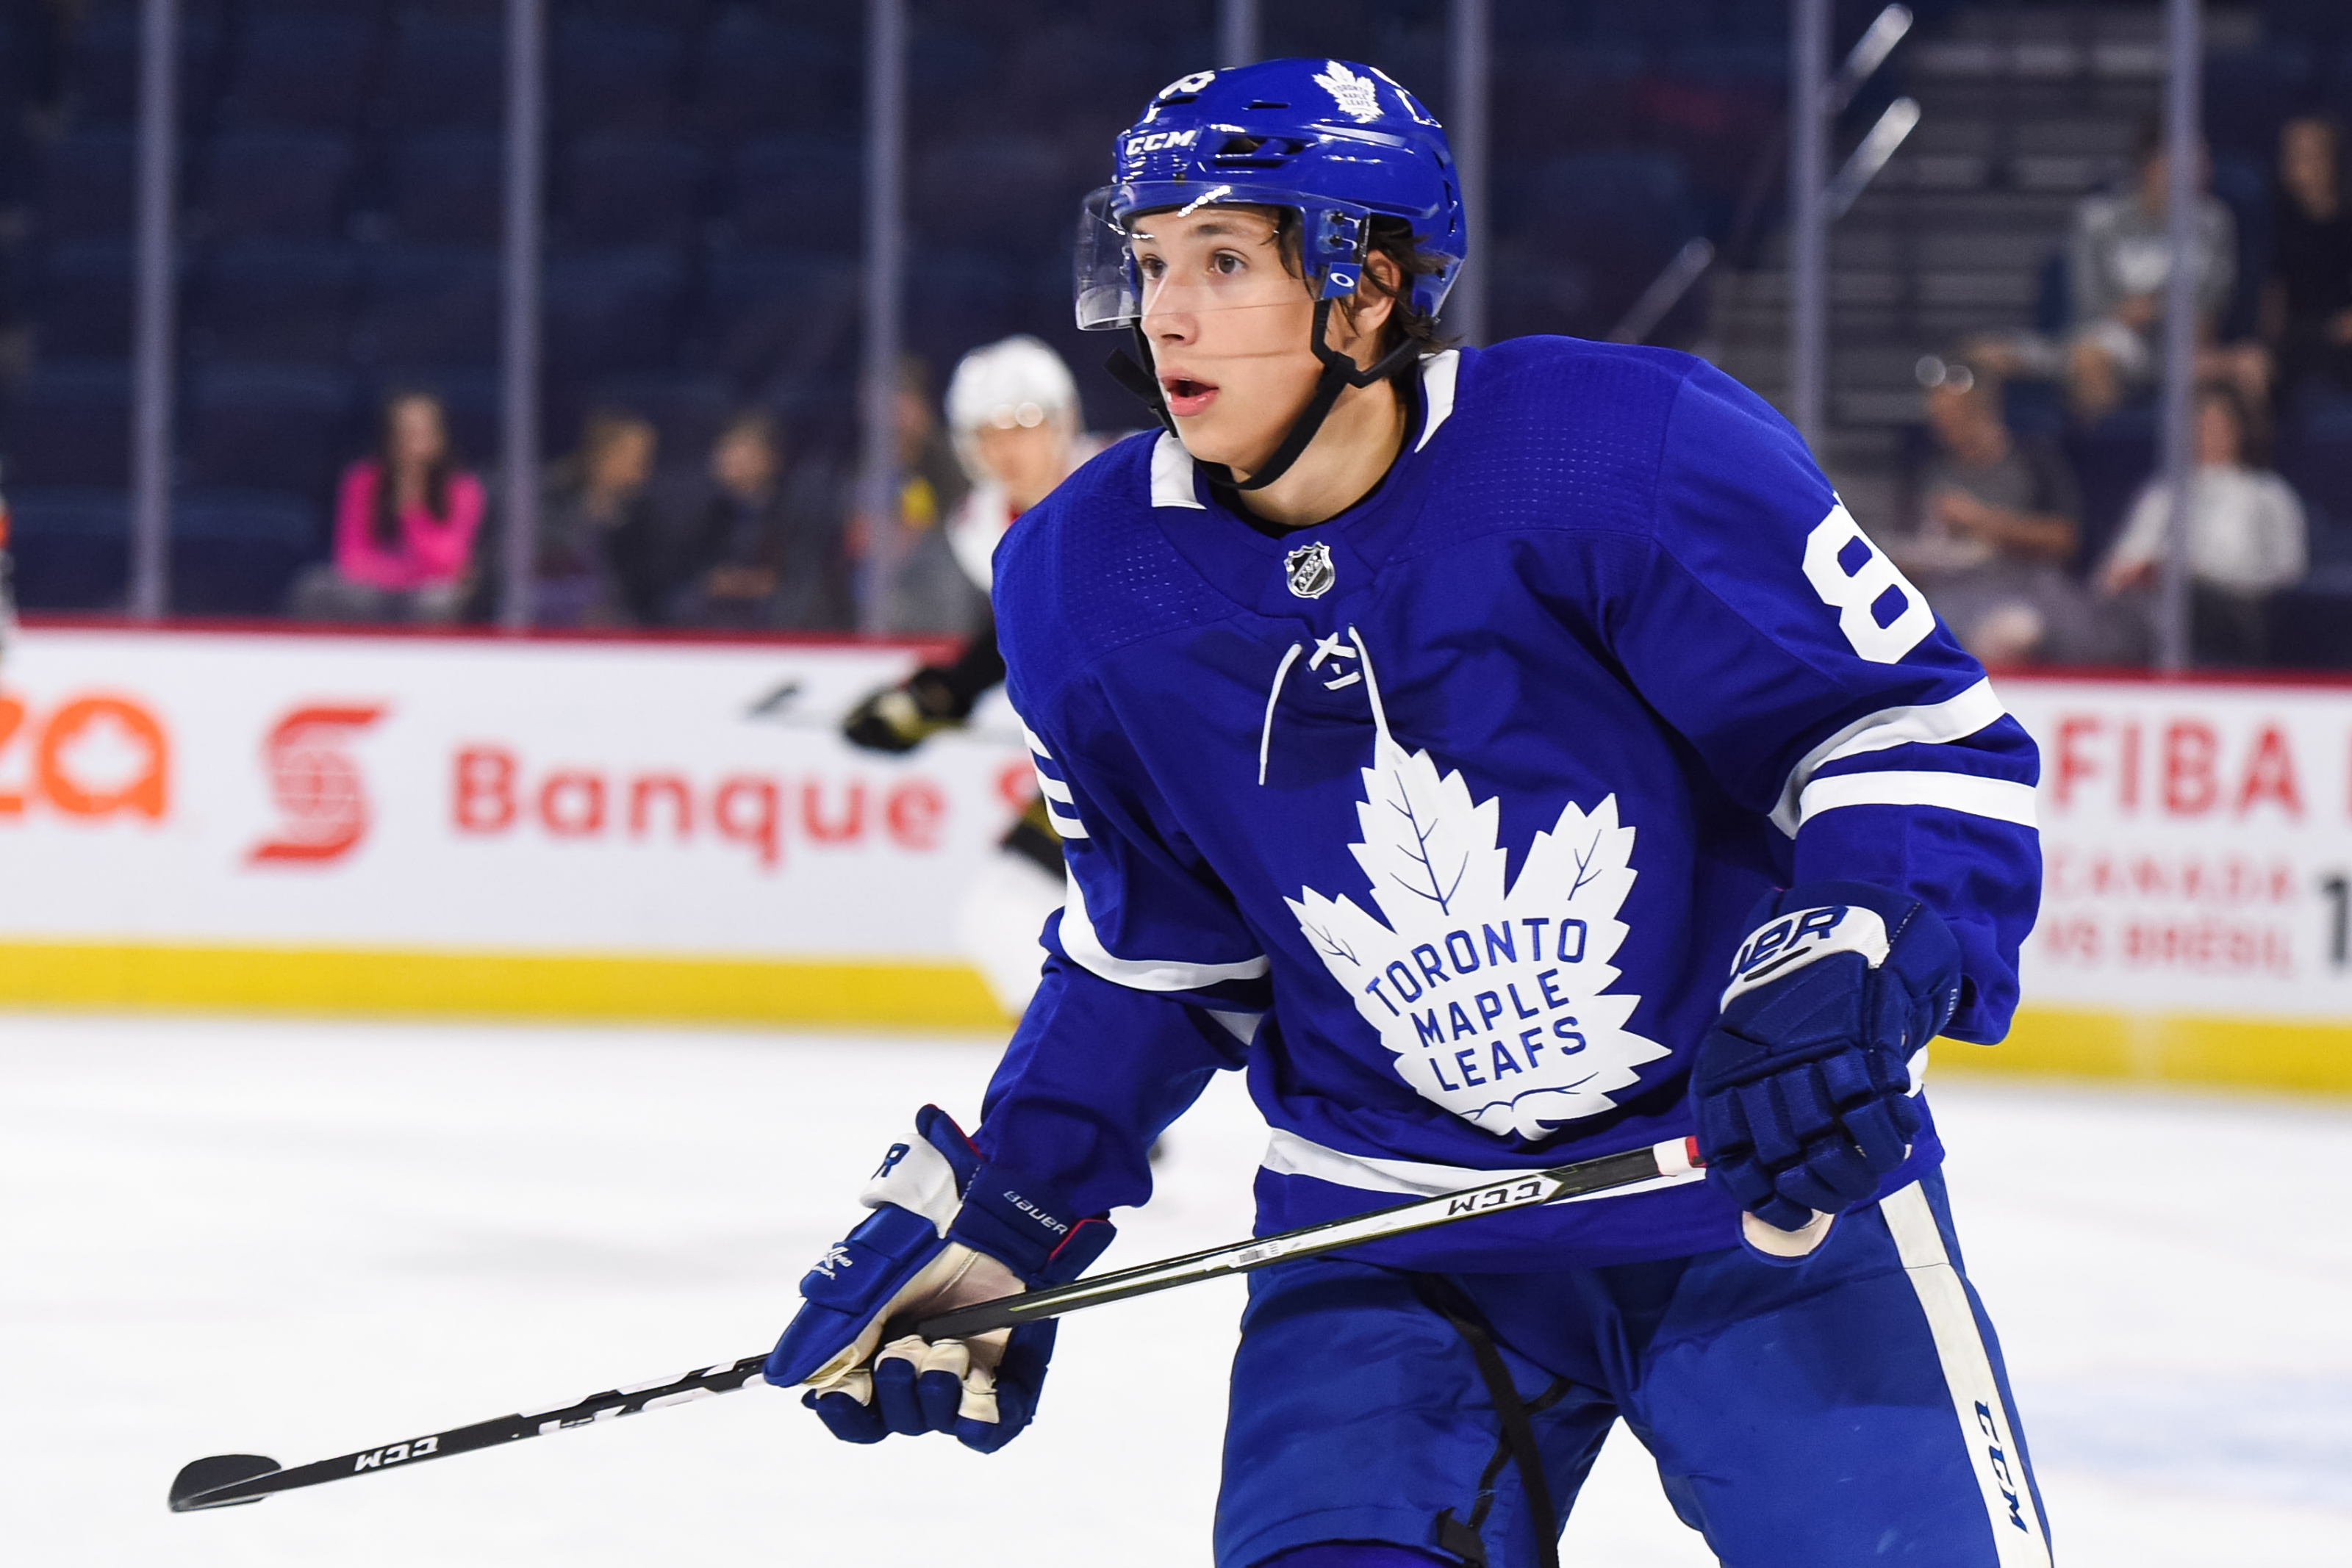 Maple Leafs Draft Central: Semyon Der-Arguchintsev - June 23, 2018 